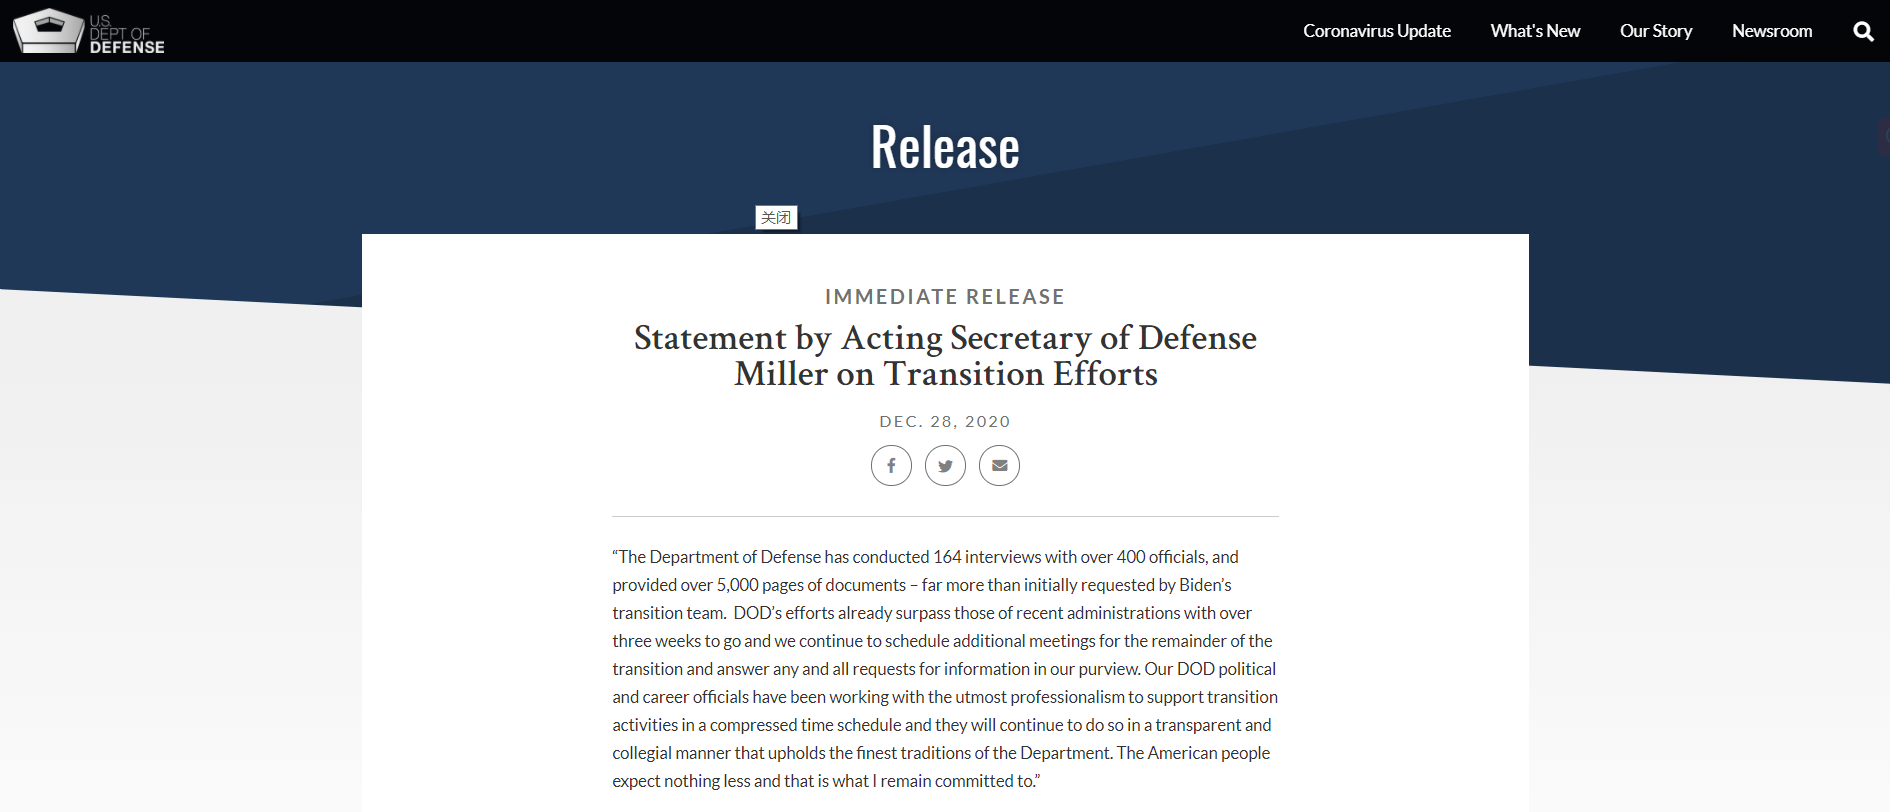 美国国防部代理部长米勒就过渡工作的声明。/美国国防部网站截图